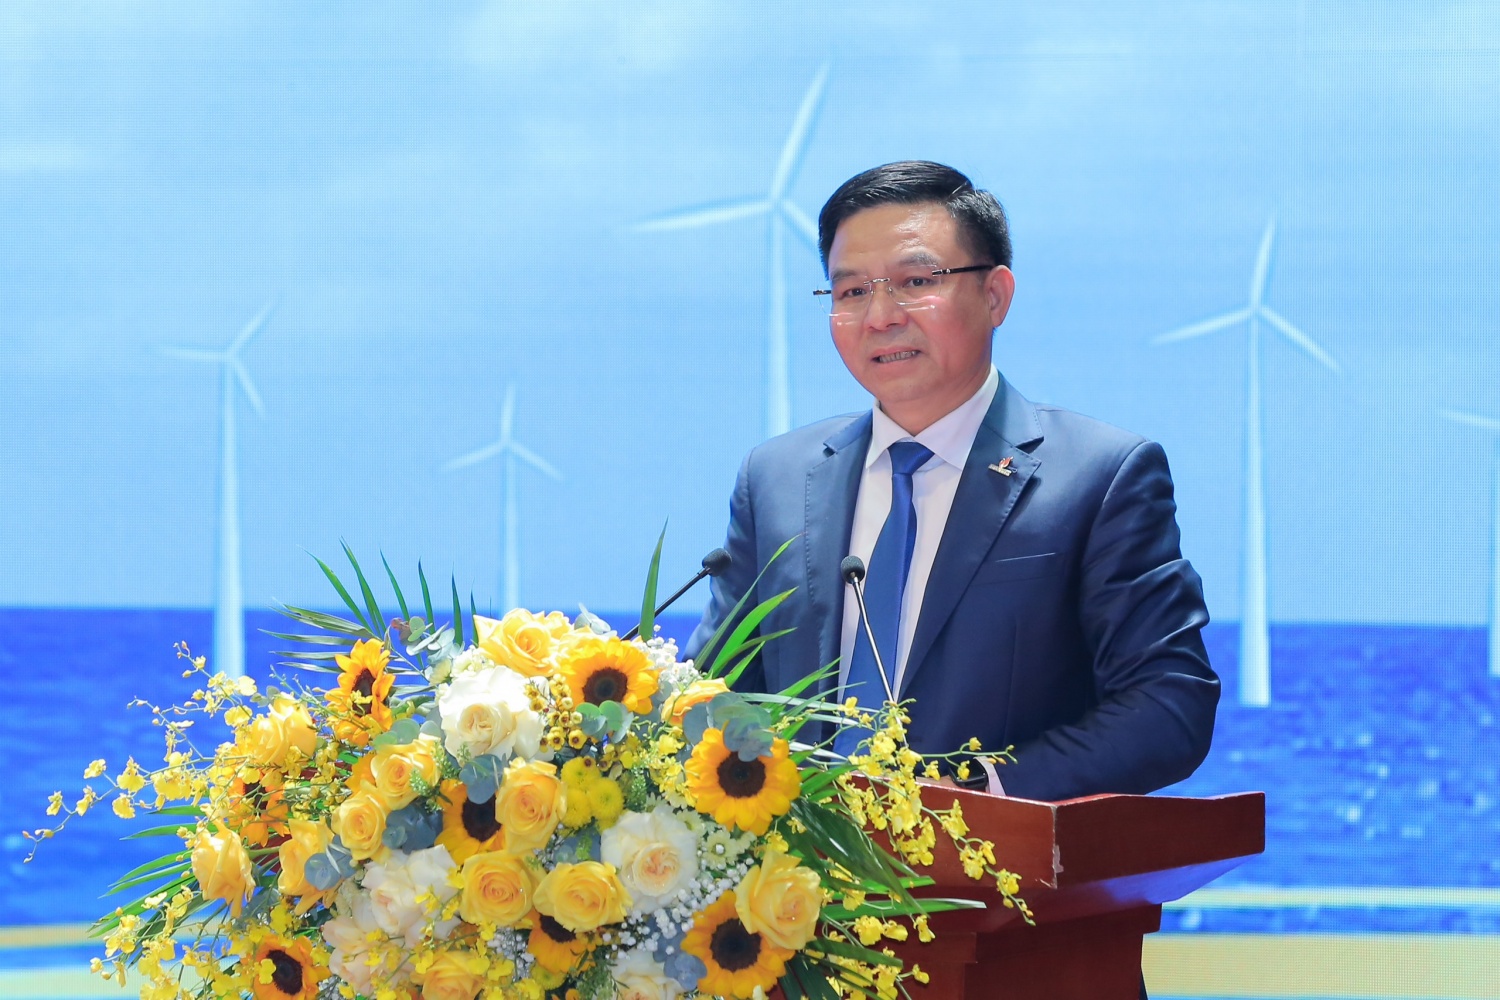 Đồng chí Lê Mạnh Hùng, Bí thư Đảng uỷ, Chủ tịch HĐTV, Tổng Giám đốc Tập đoàn phát biểu khai mạc Hội nghị